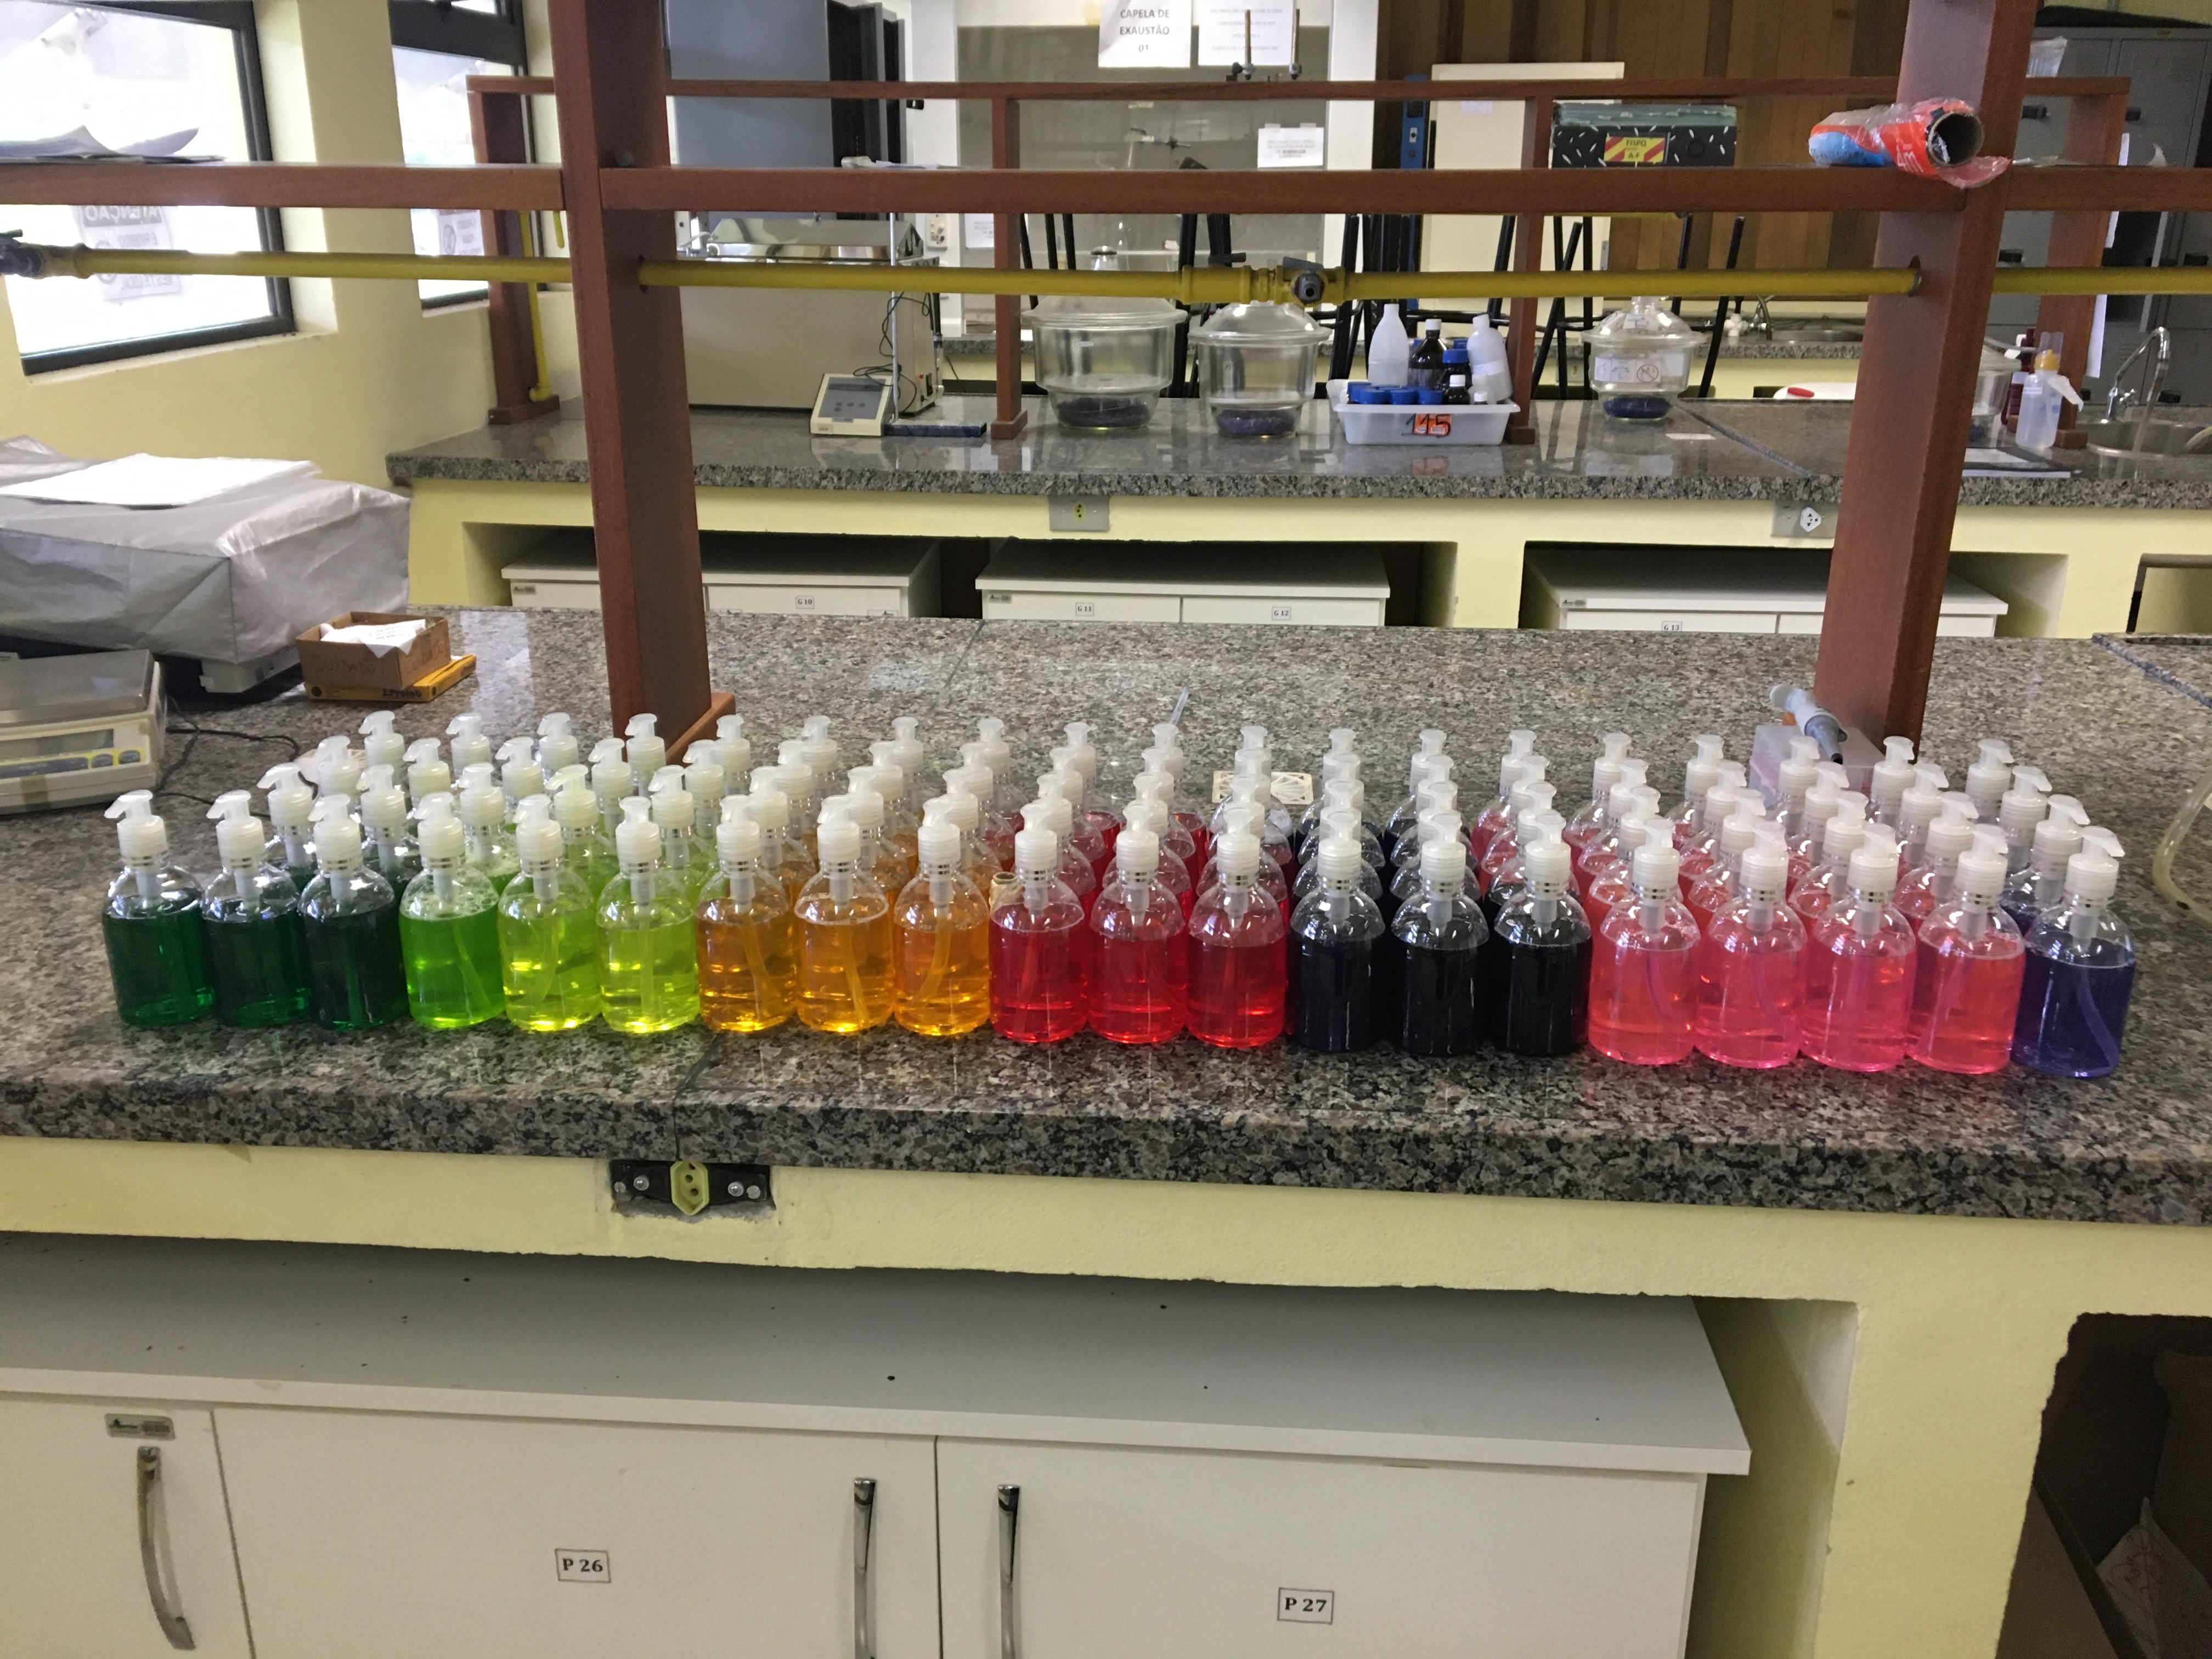 sobre uma bancada de granito em um laboratório, 73 frascos de 250ml de sabonetes em diferentes cores